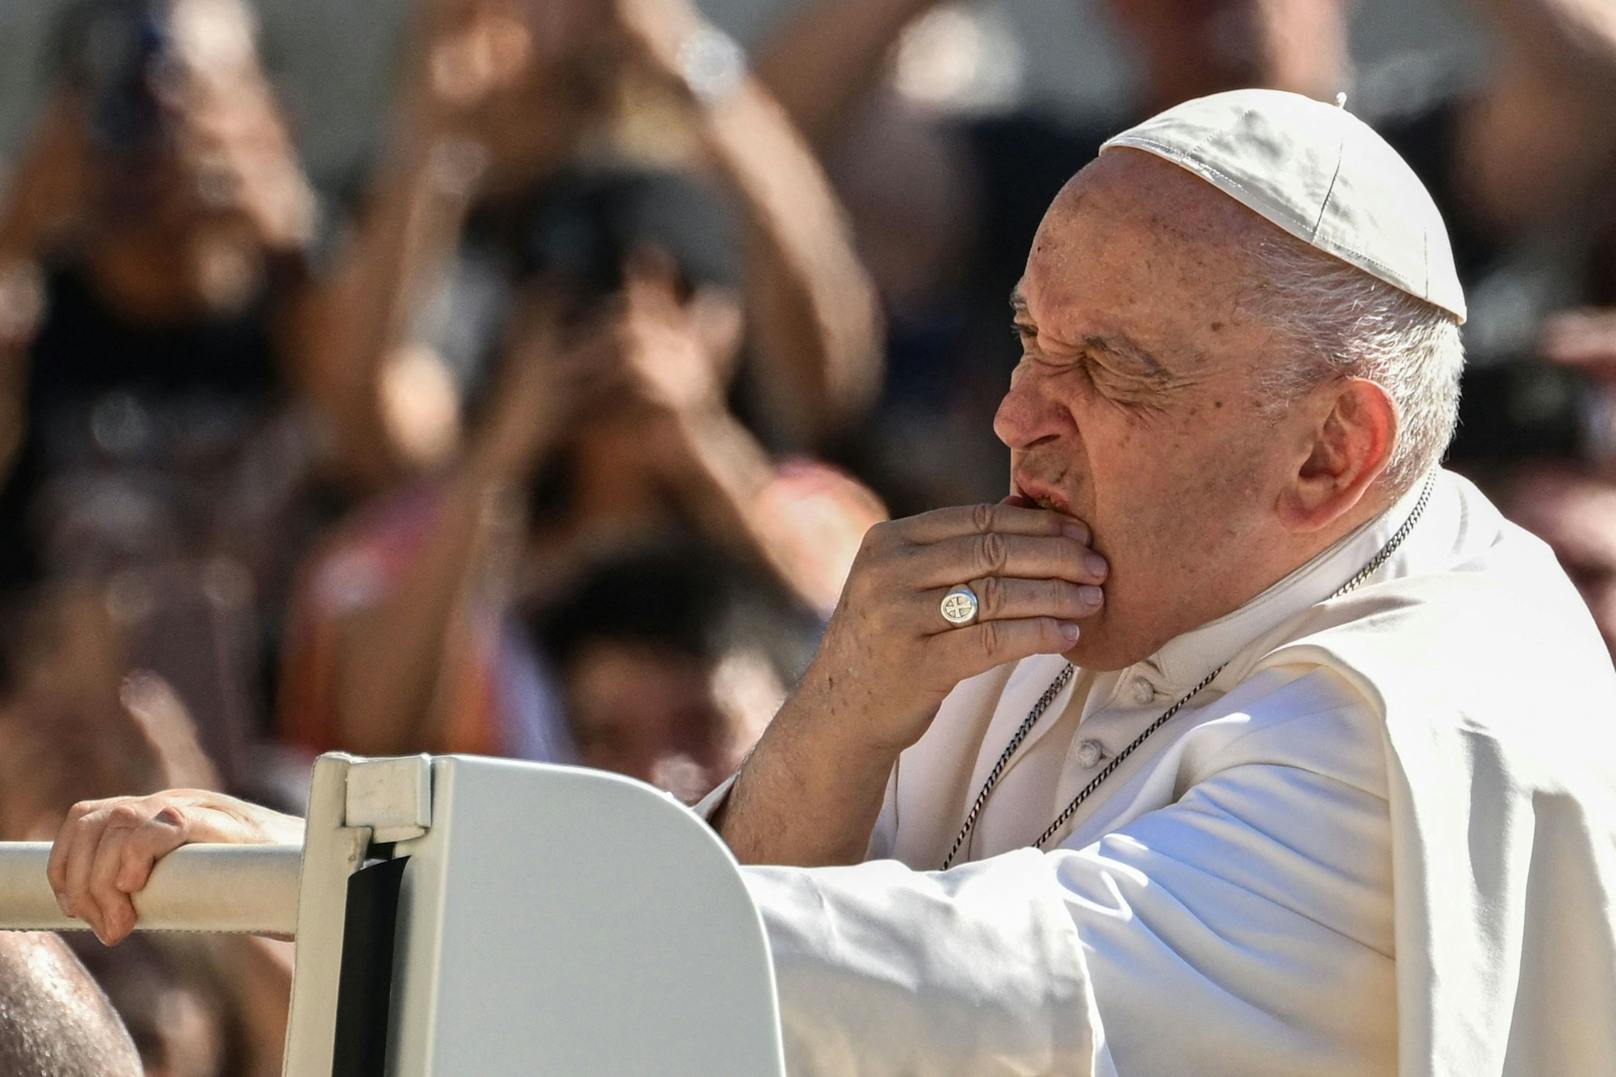 Not-Operation! Papst Franziskus (86) liegt im Spital